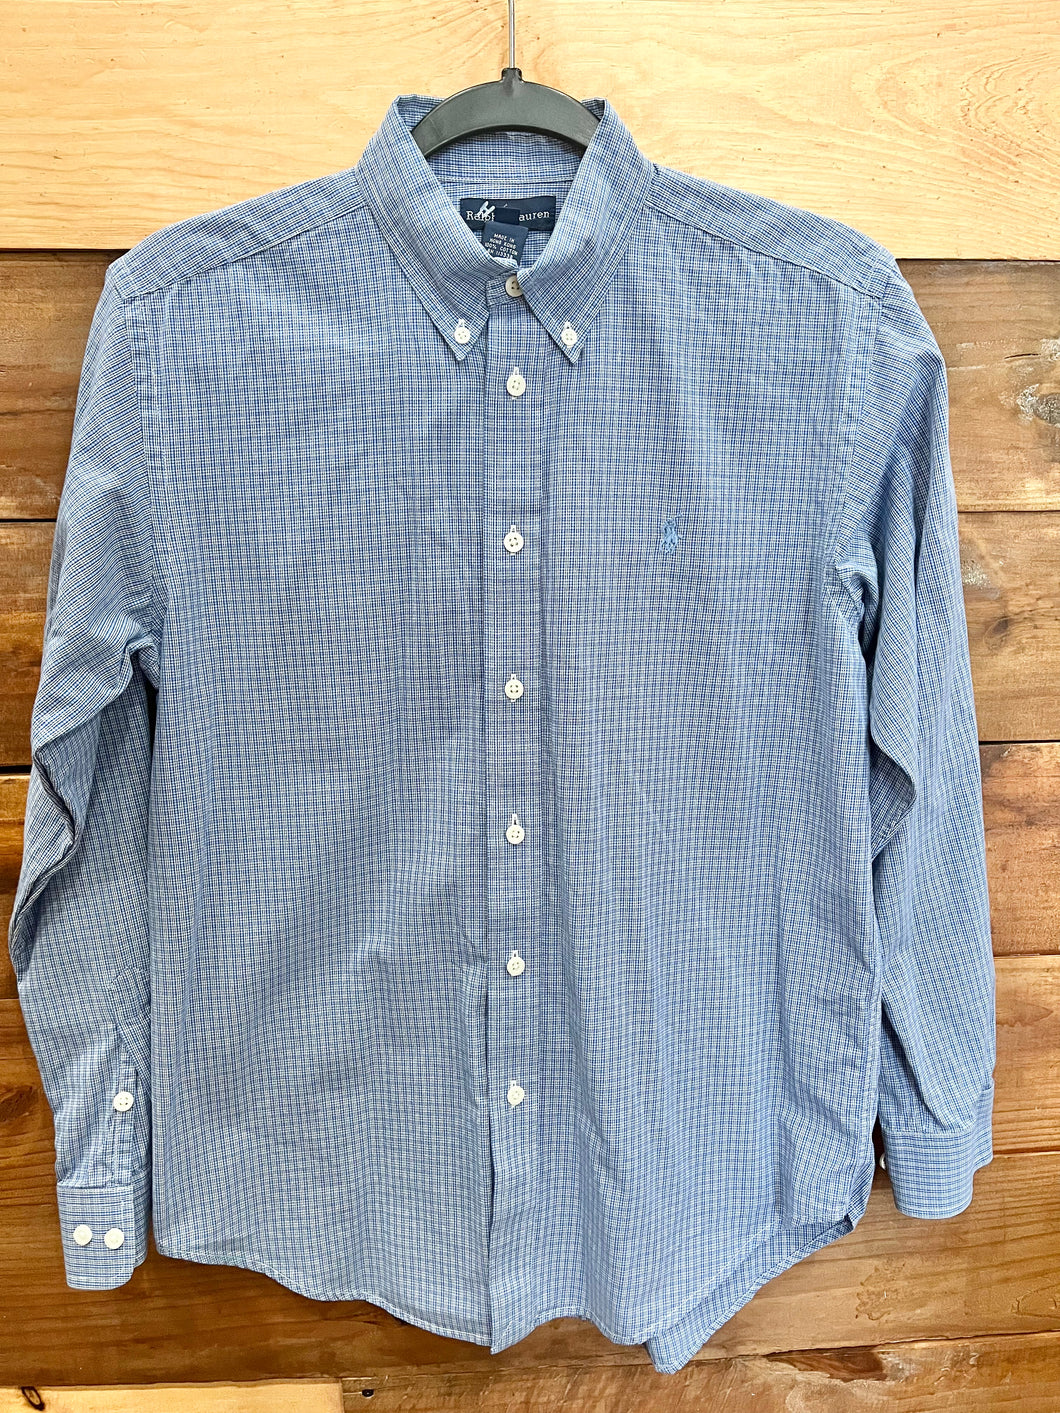 Ralph Lauren Blue Striped Shirt Size 16